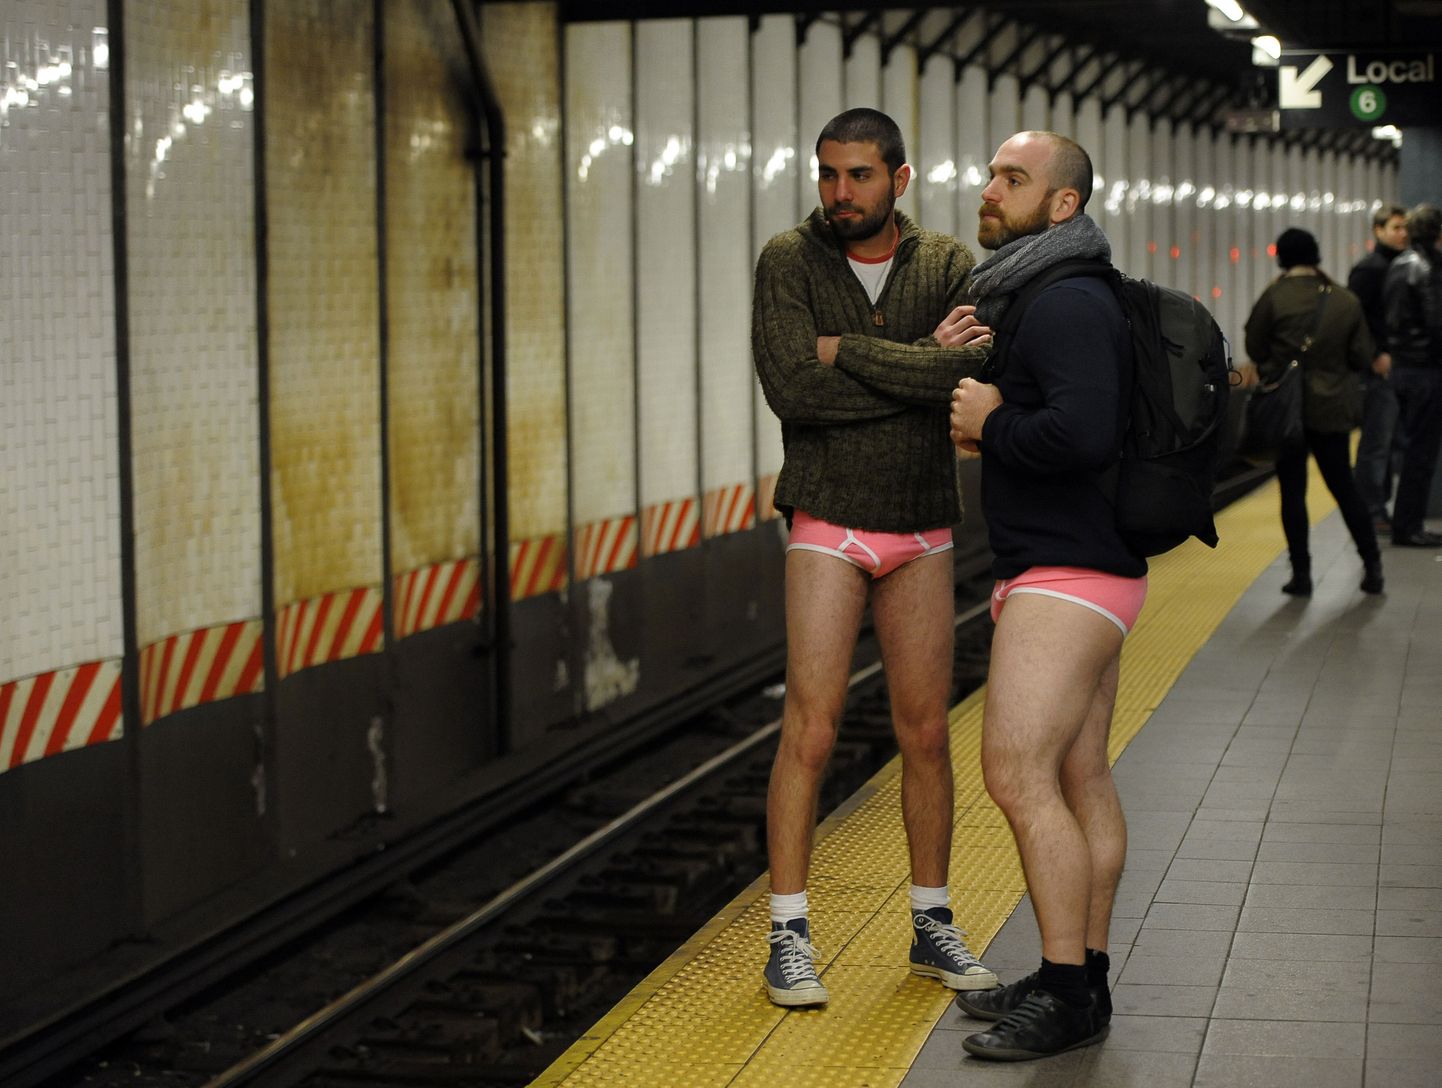 New York'i metroos toimuv massiüritus, kus linnaelanike kutsutakse üles püksata metroos sõitma